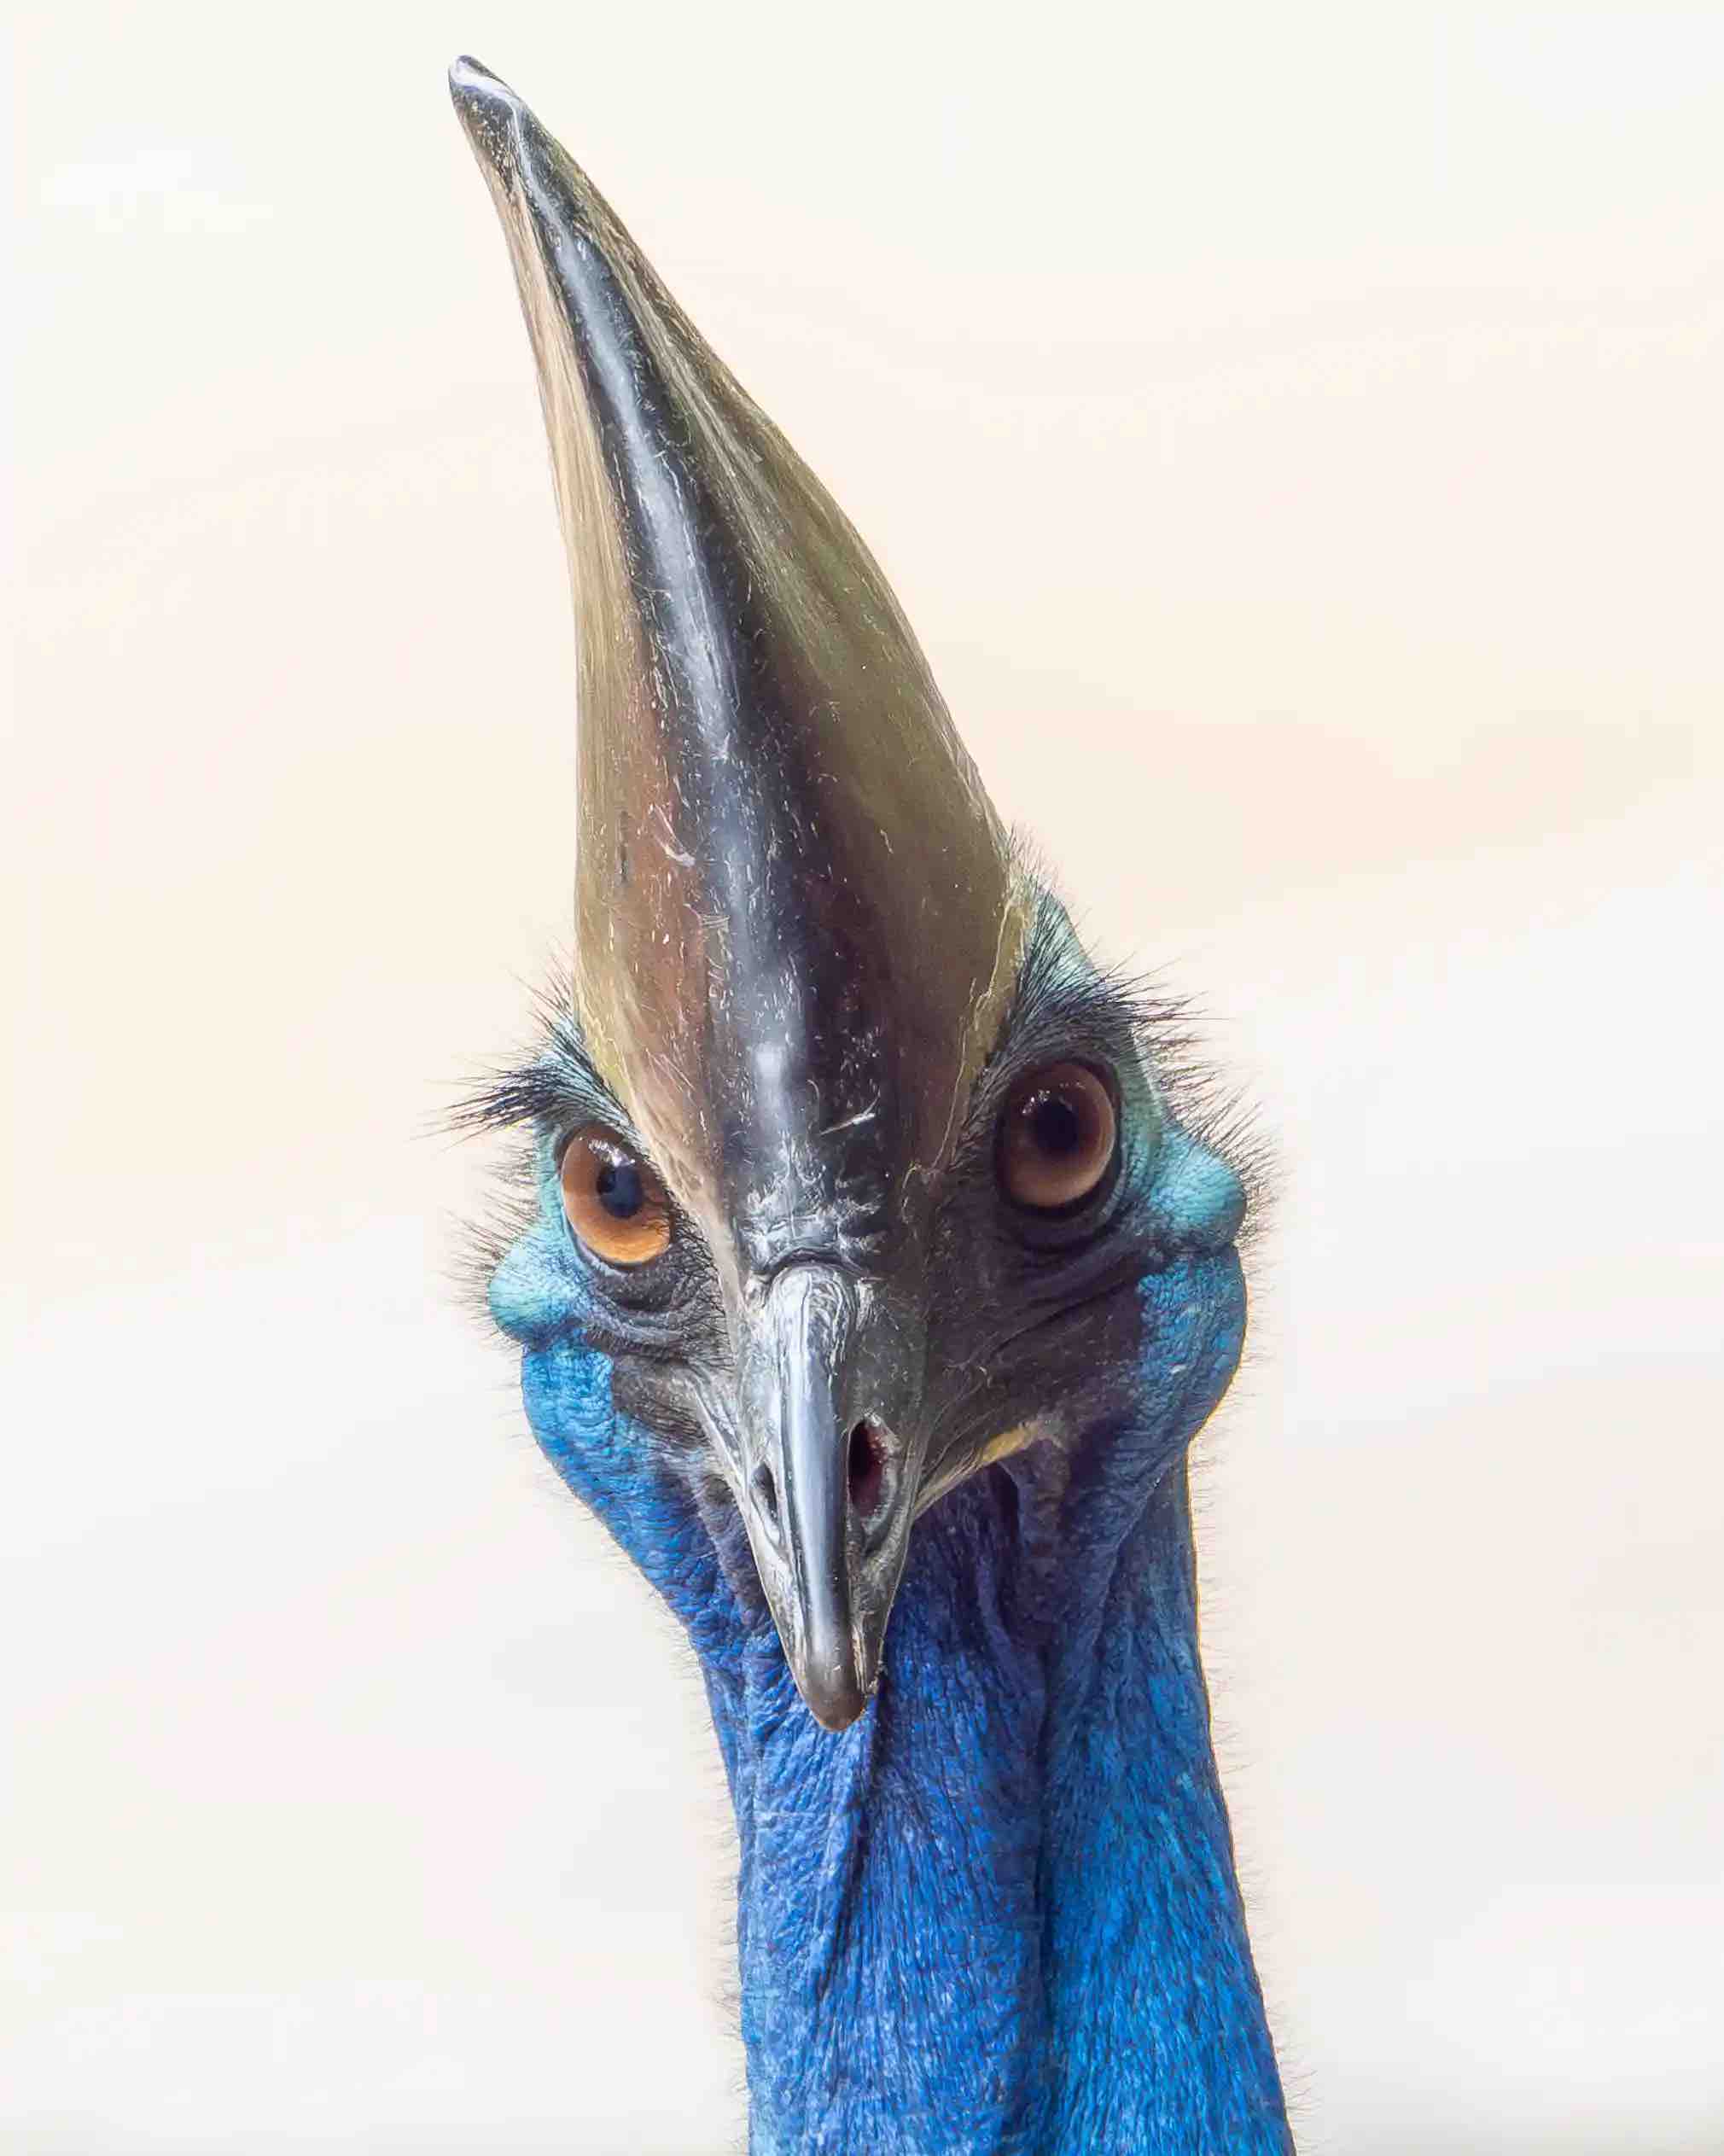 Casuar azul, pássaro típico da Australia, em foto premiada em concurso de imagens de pássaros